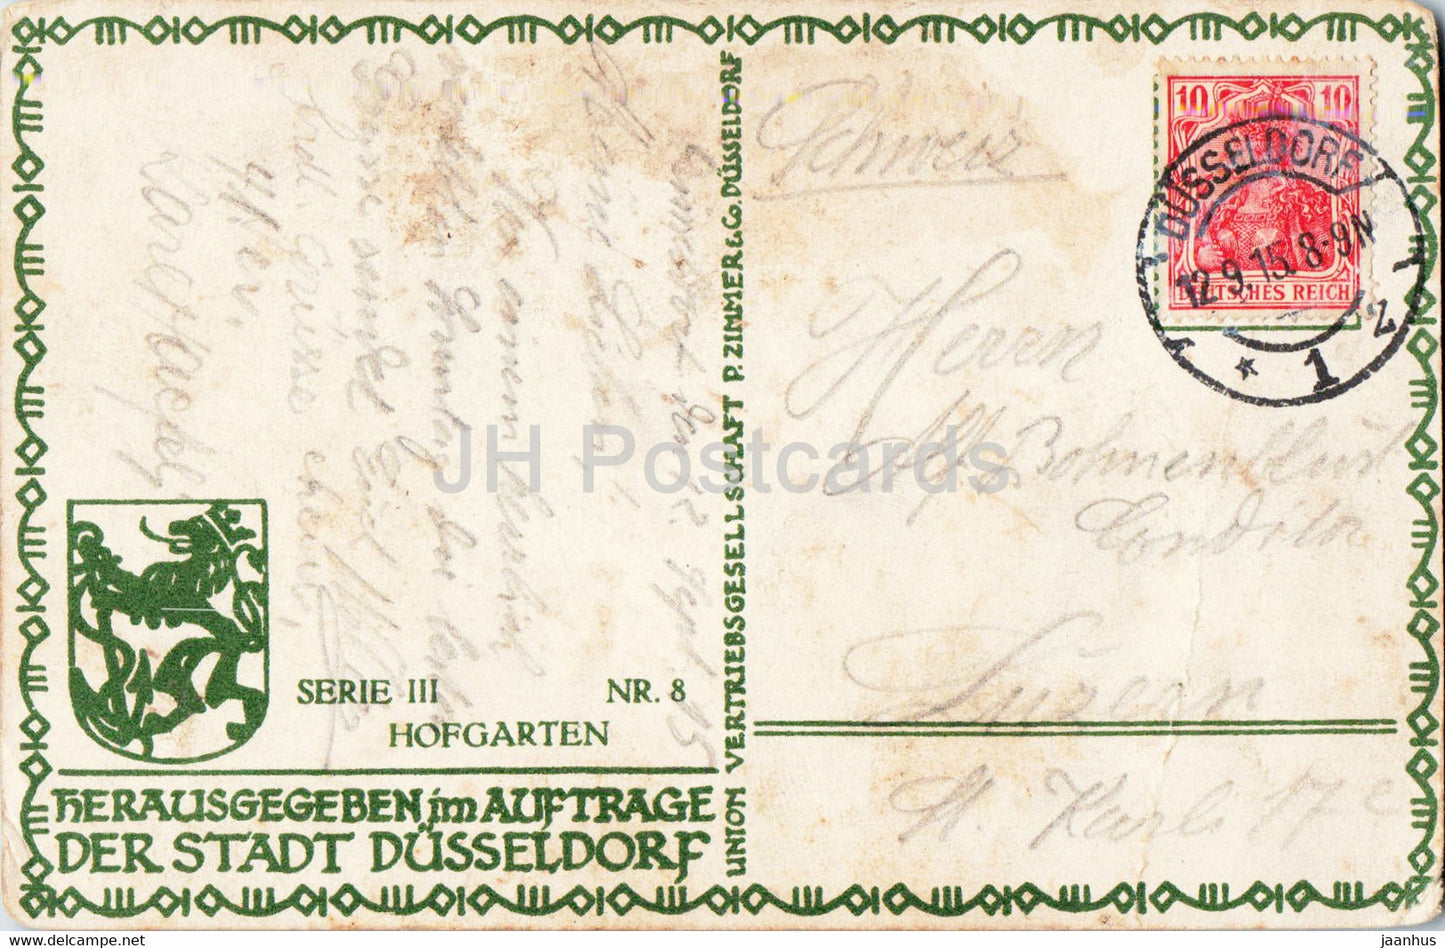 Düsseldorf - Hofgarten - alte Postkarte - 1915 - Deutschland - gebraucht